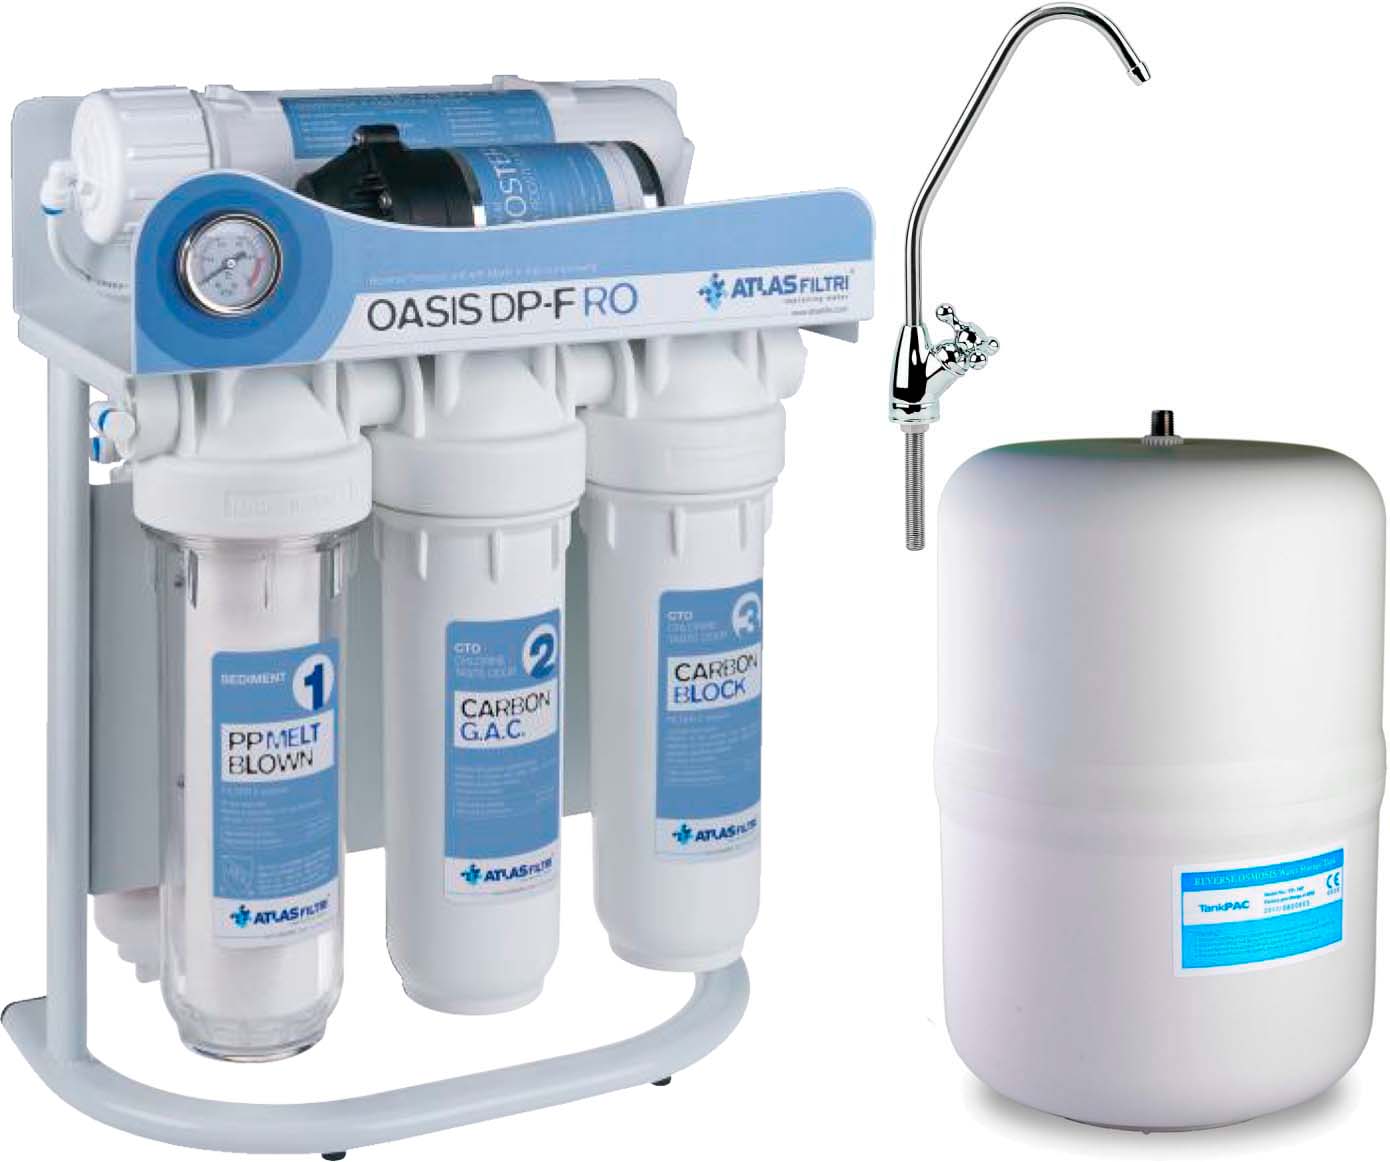 Фильтр для воды Atlas Filtri Oasis DP-F PUMP (насос, минерализатор) с каркасом RE6075350 в интернет-магазине, главное фото